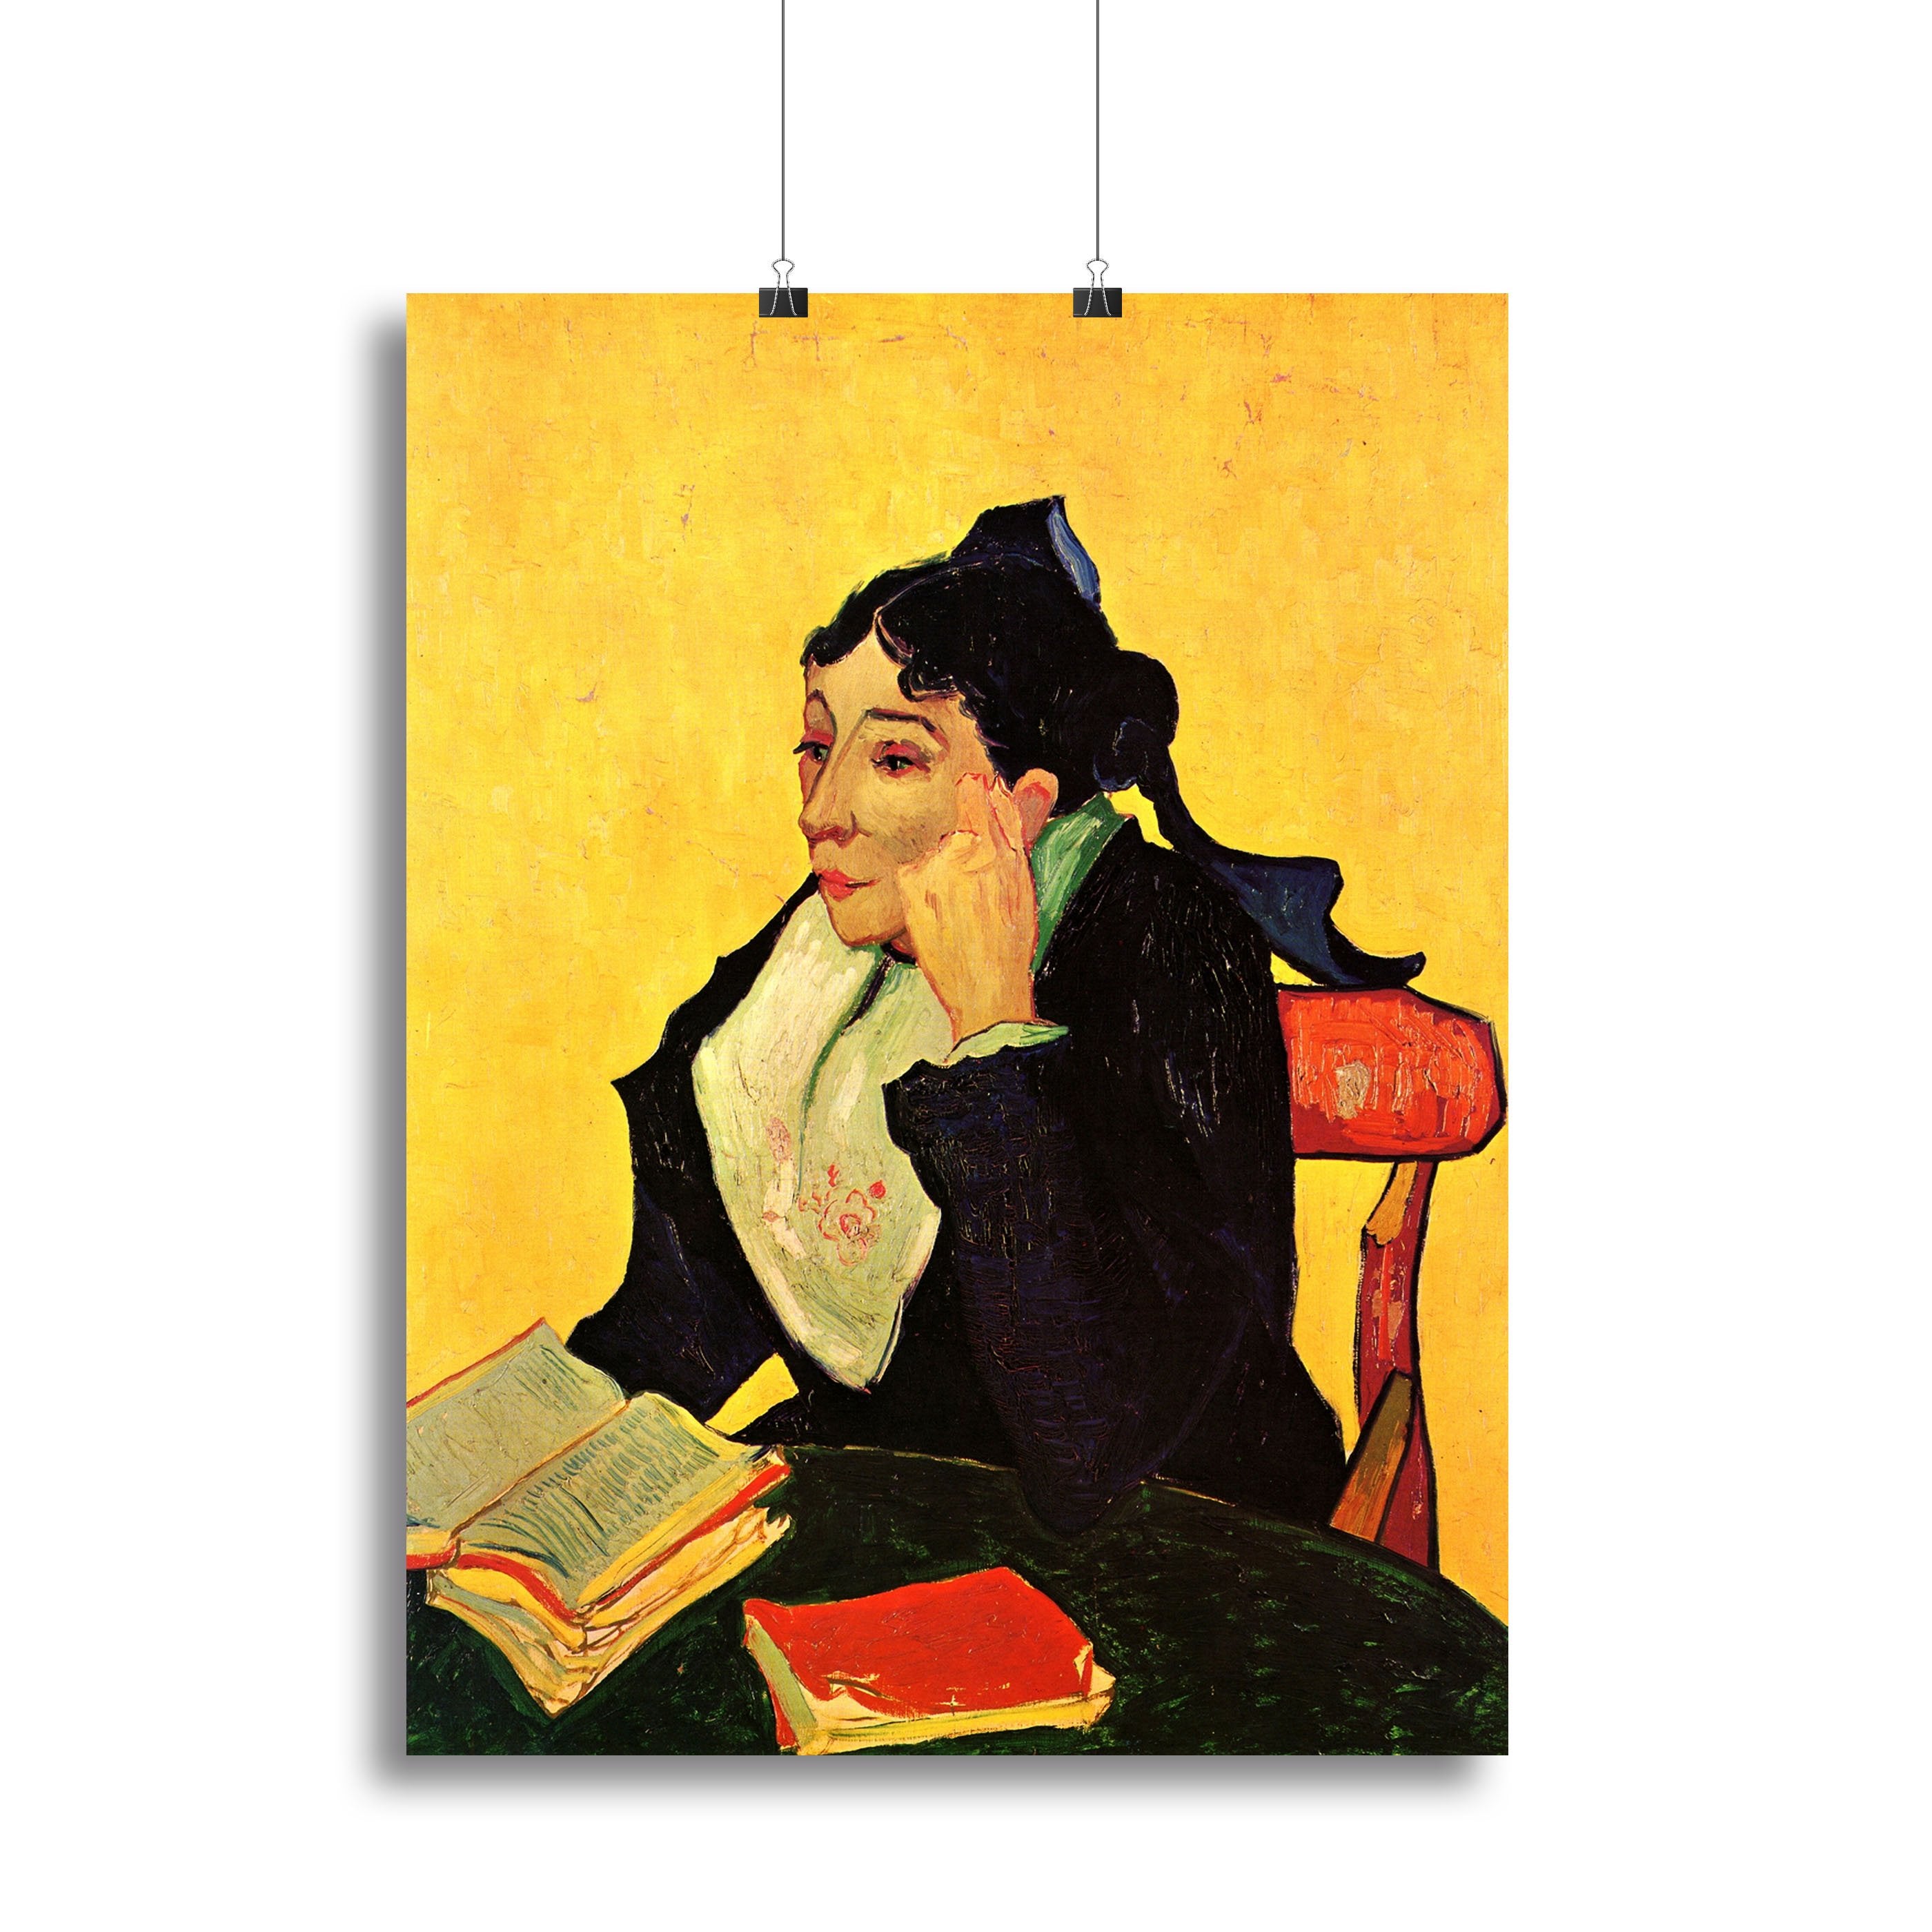 Arlesienne by Van Gogh Canvas Print or Poster